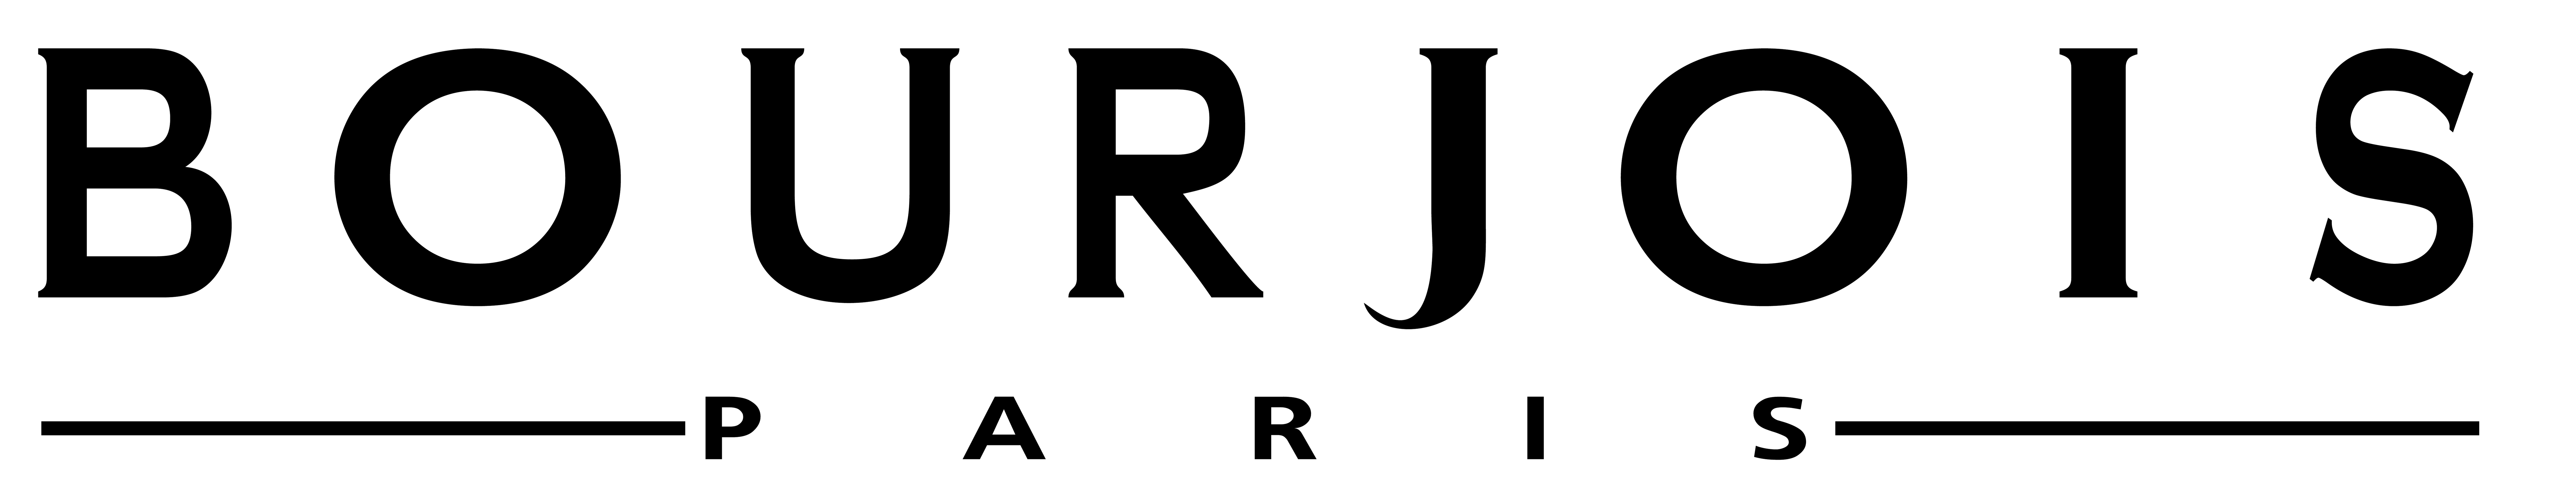 Логотип бренда Bourjois